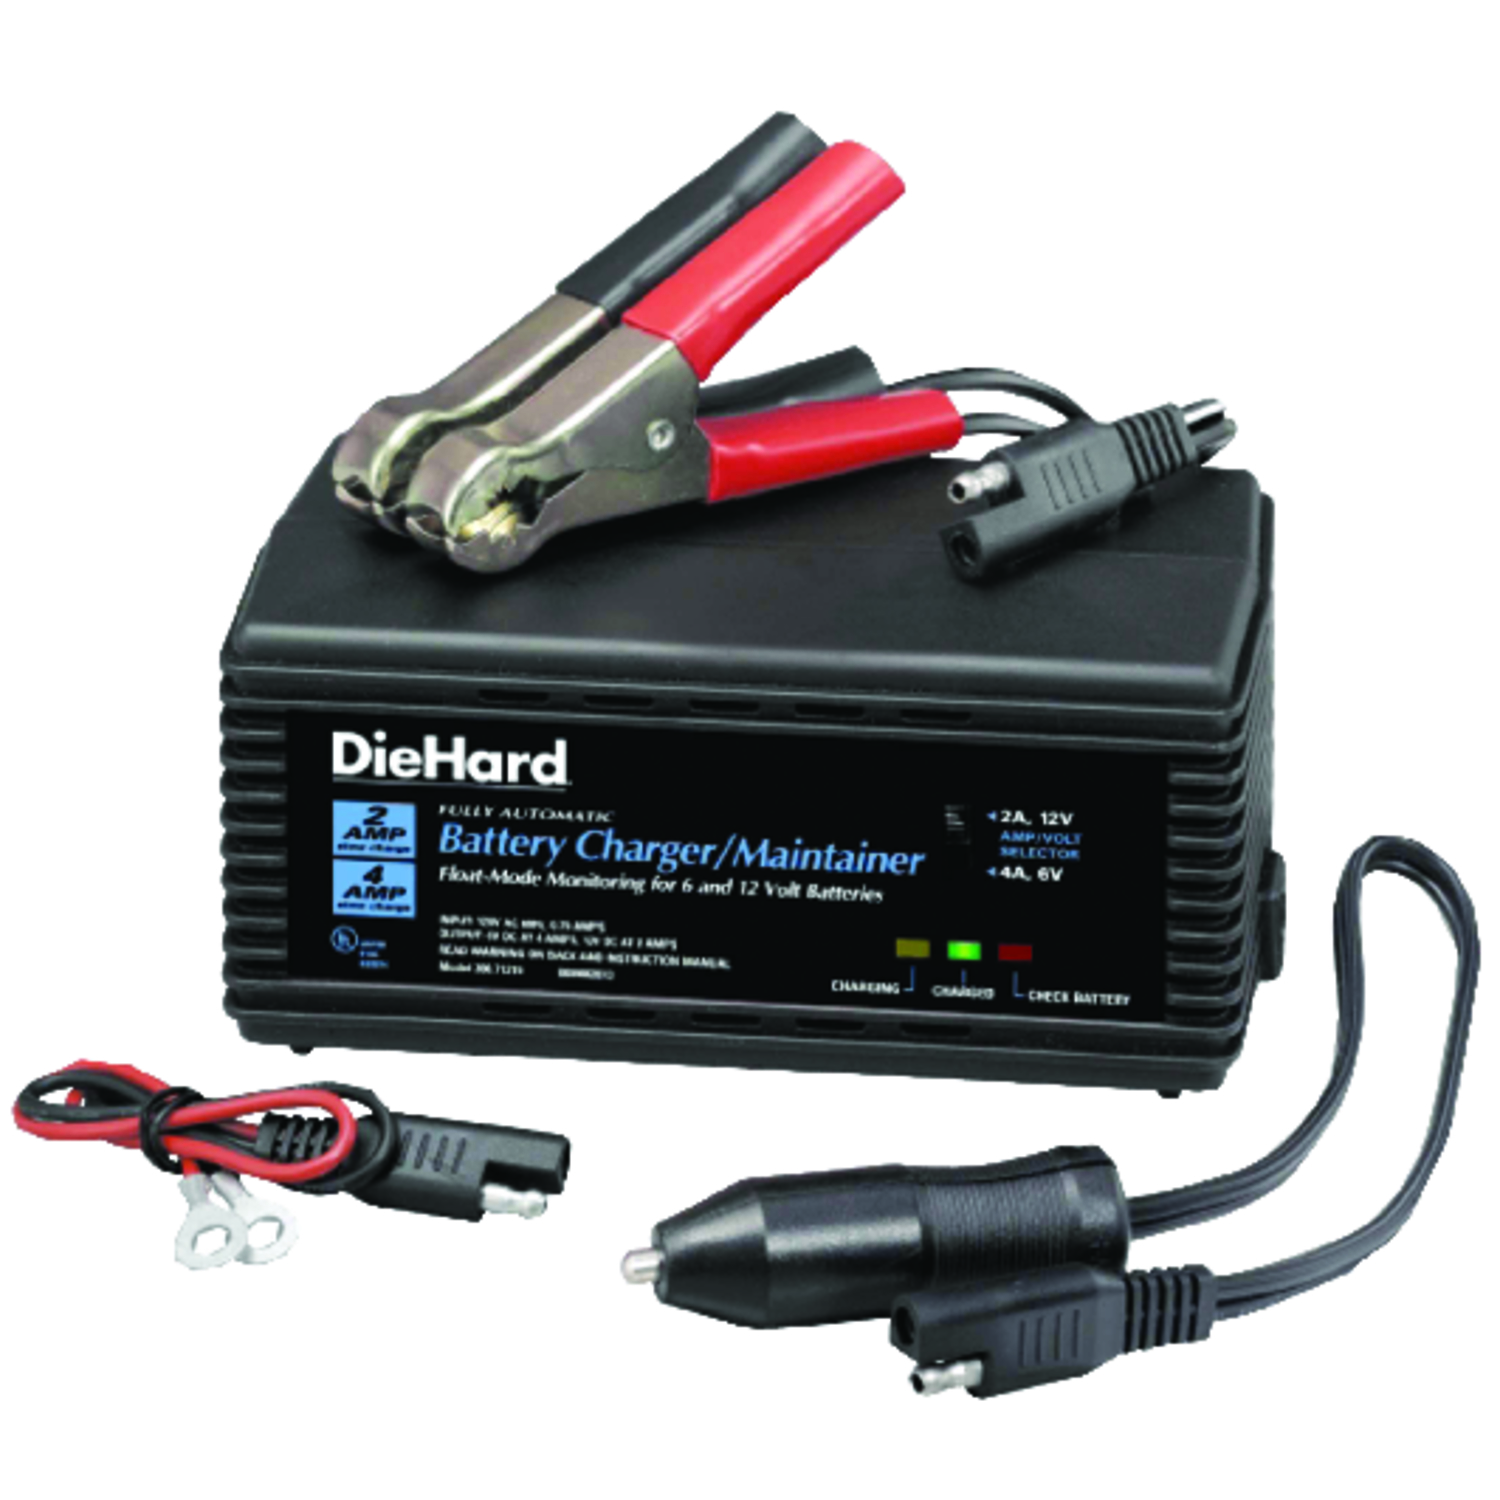 Diehard 750 (12Ah Battery) 12V 12Ah Jump Starter Battery